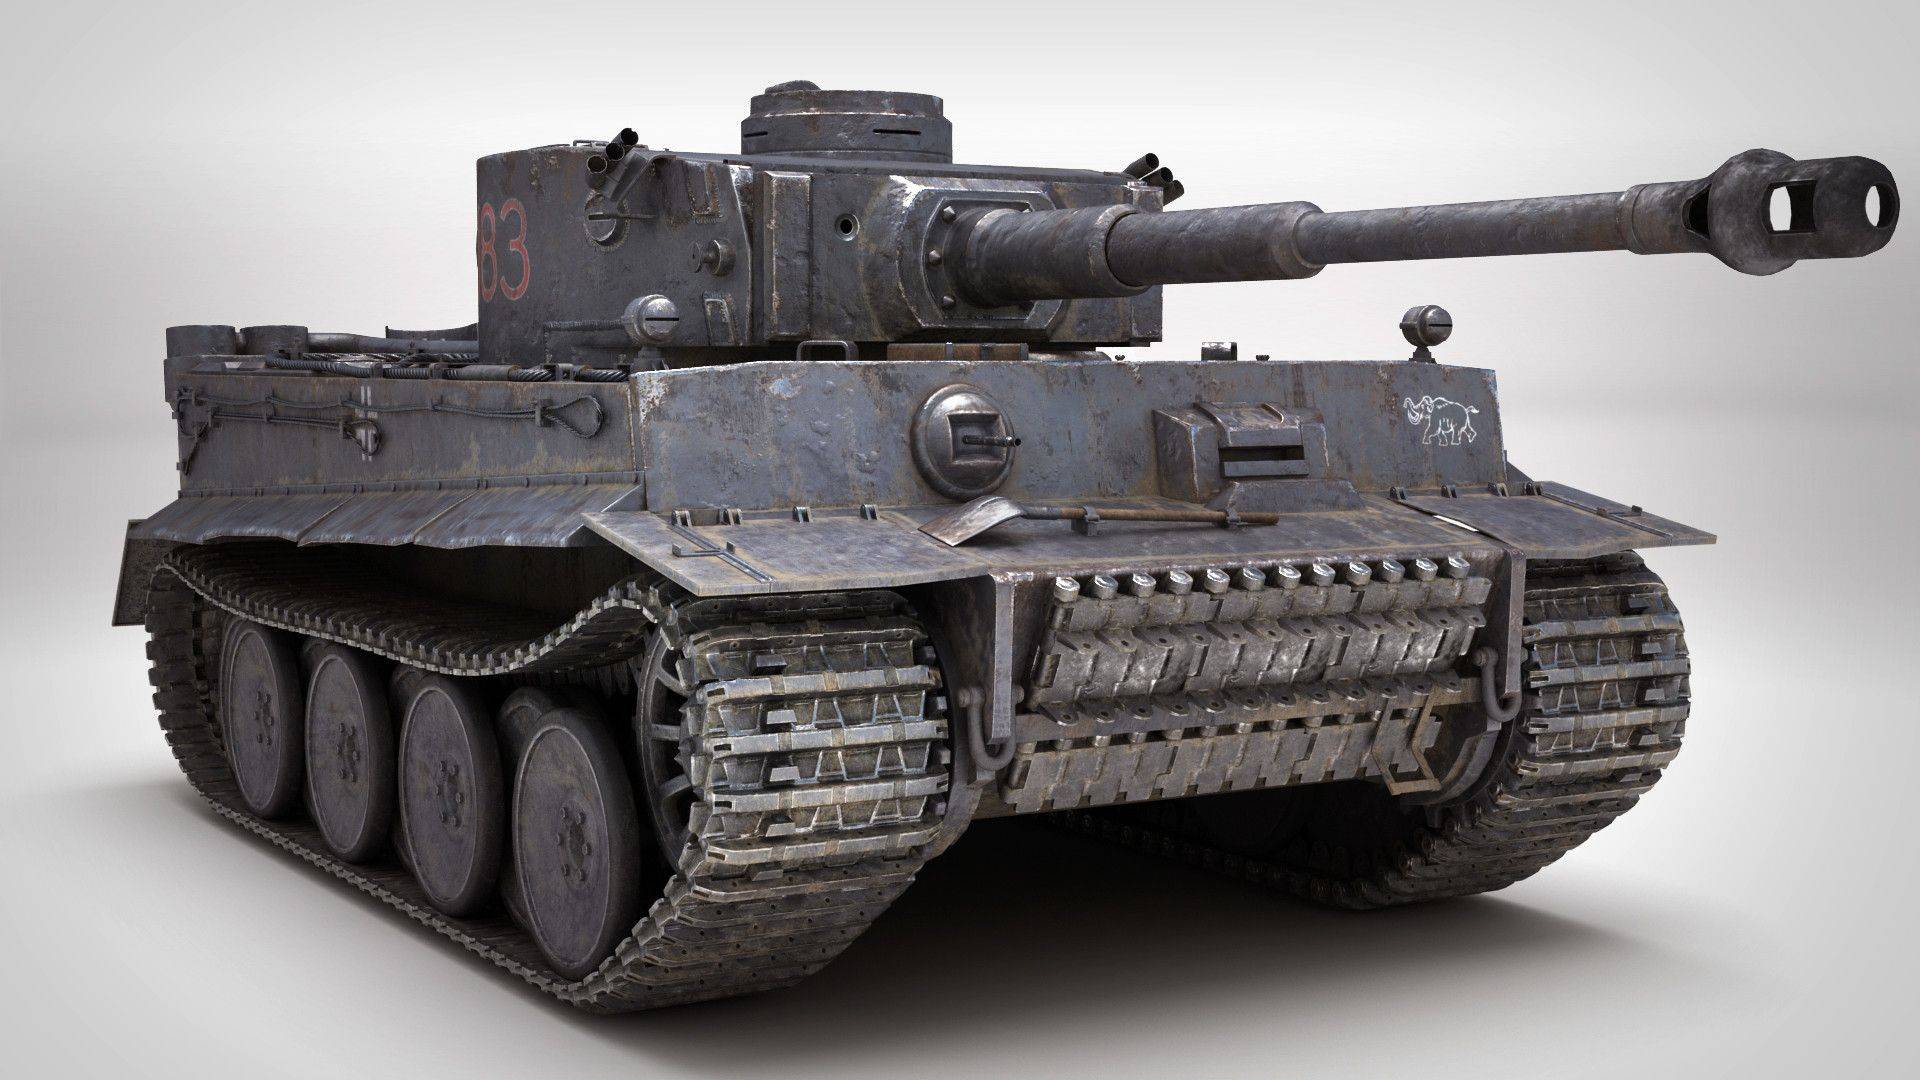 Гайд по тяжелому немецкому танку 8 уровня tiger 2 world of tanks. обзор преимуществ и недостатков. учись играть правильно вместе с aces.gg